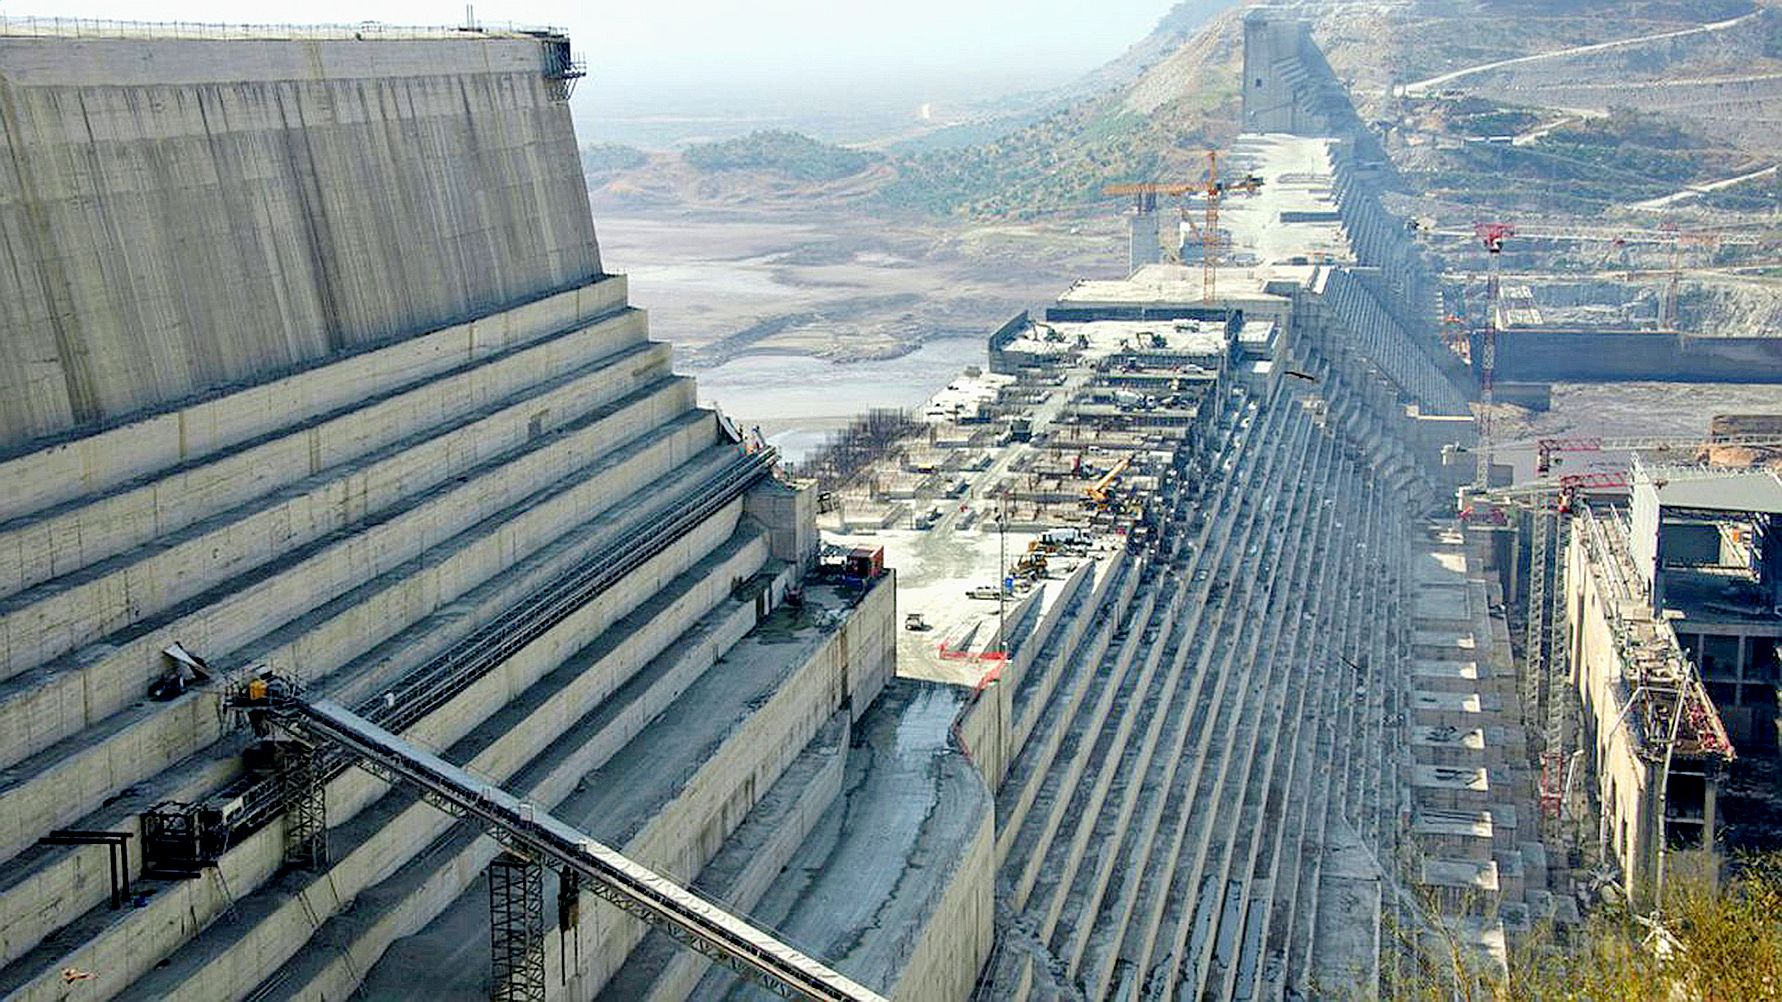 Le barrage doit fournir 6 000 mégawatts à l’Ethiopie d’ici 2022.Photo AFP